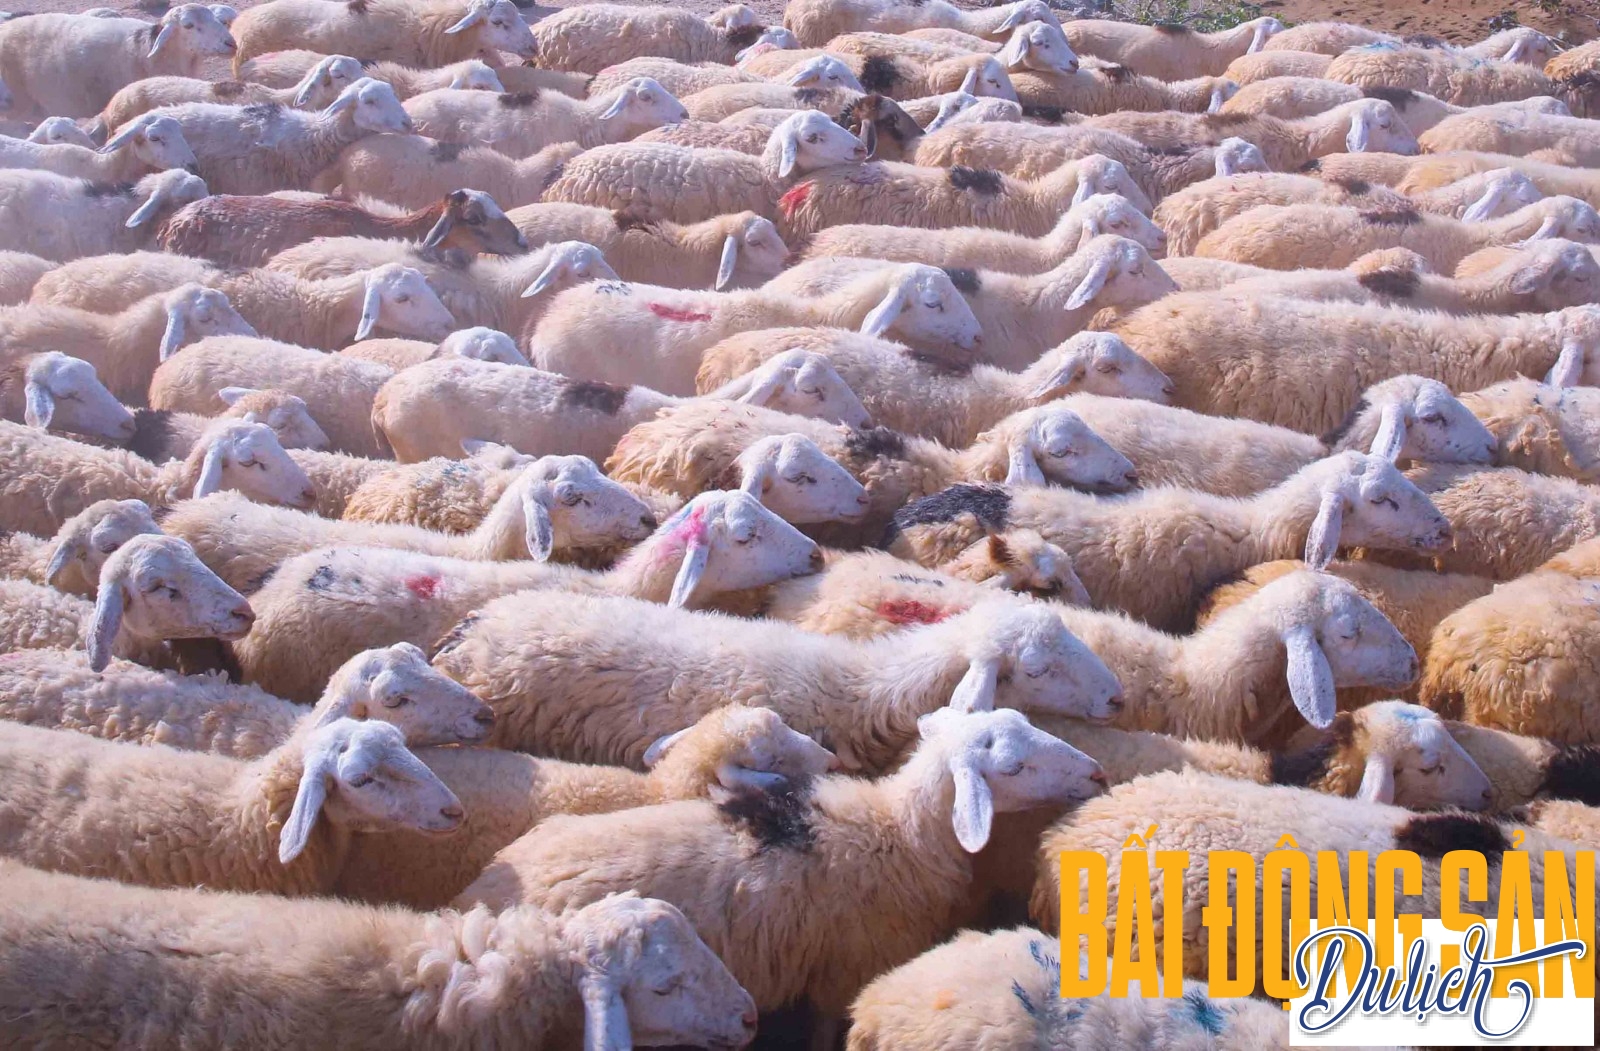 Cừu ở Ninh Thuận chủ yếu nuôi lấy thịt nên lông của chúng không được sạch và trắng như các loài cừu thường thấy ở nước ngoài. Trong ảnh là một đàn cừu ở An Hòa tương đối trắng sạch bởi sau khi ăn tắm nước ở đập Thành Sơn gần đó.